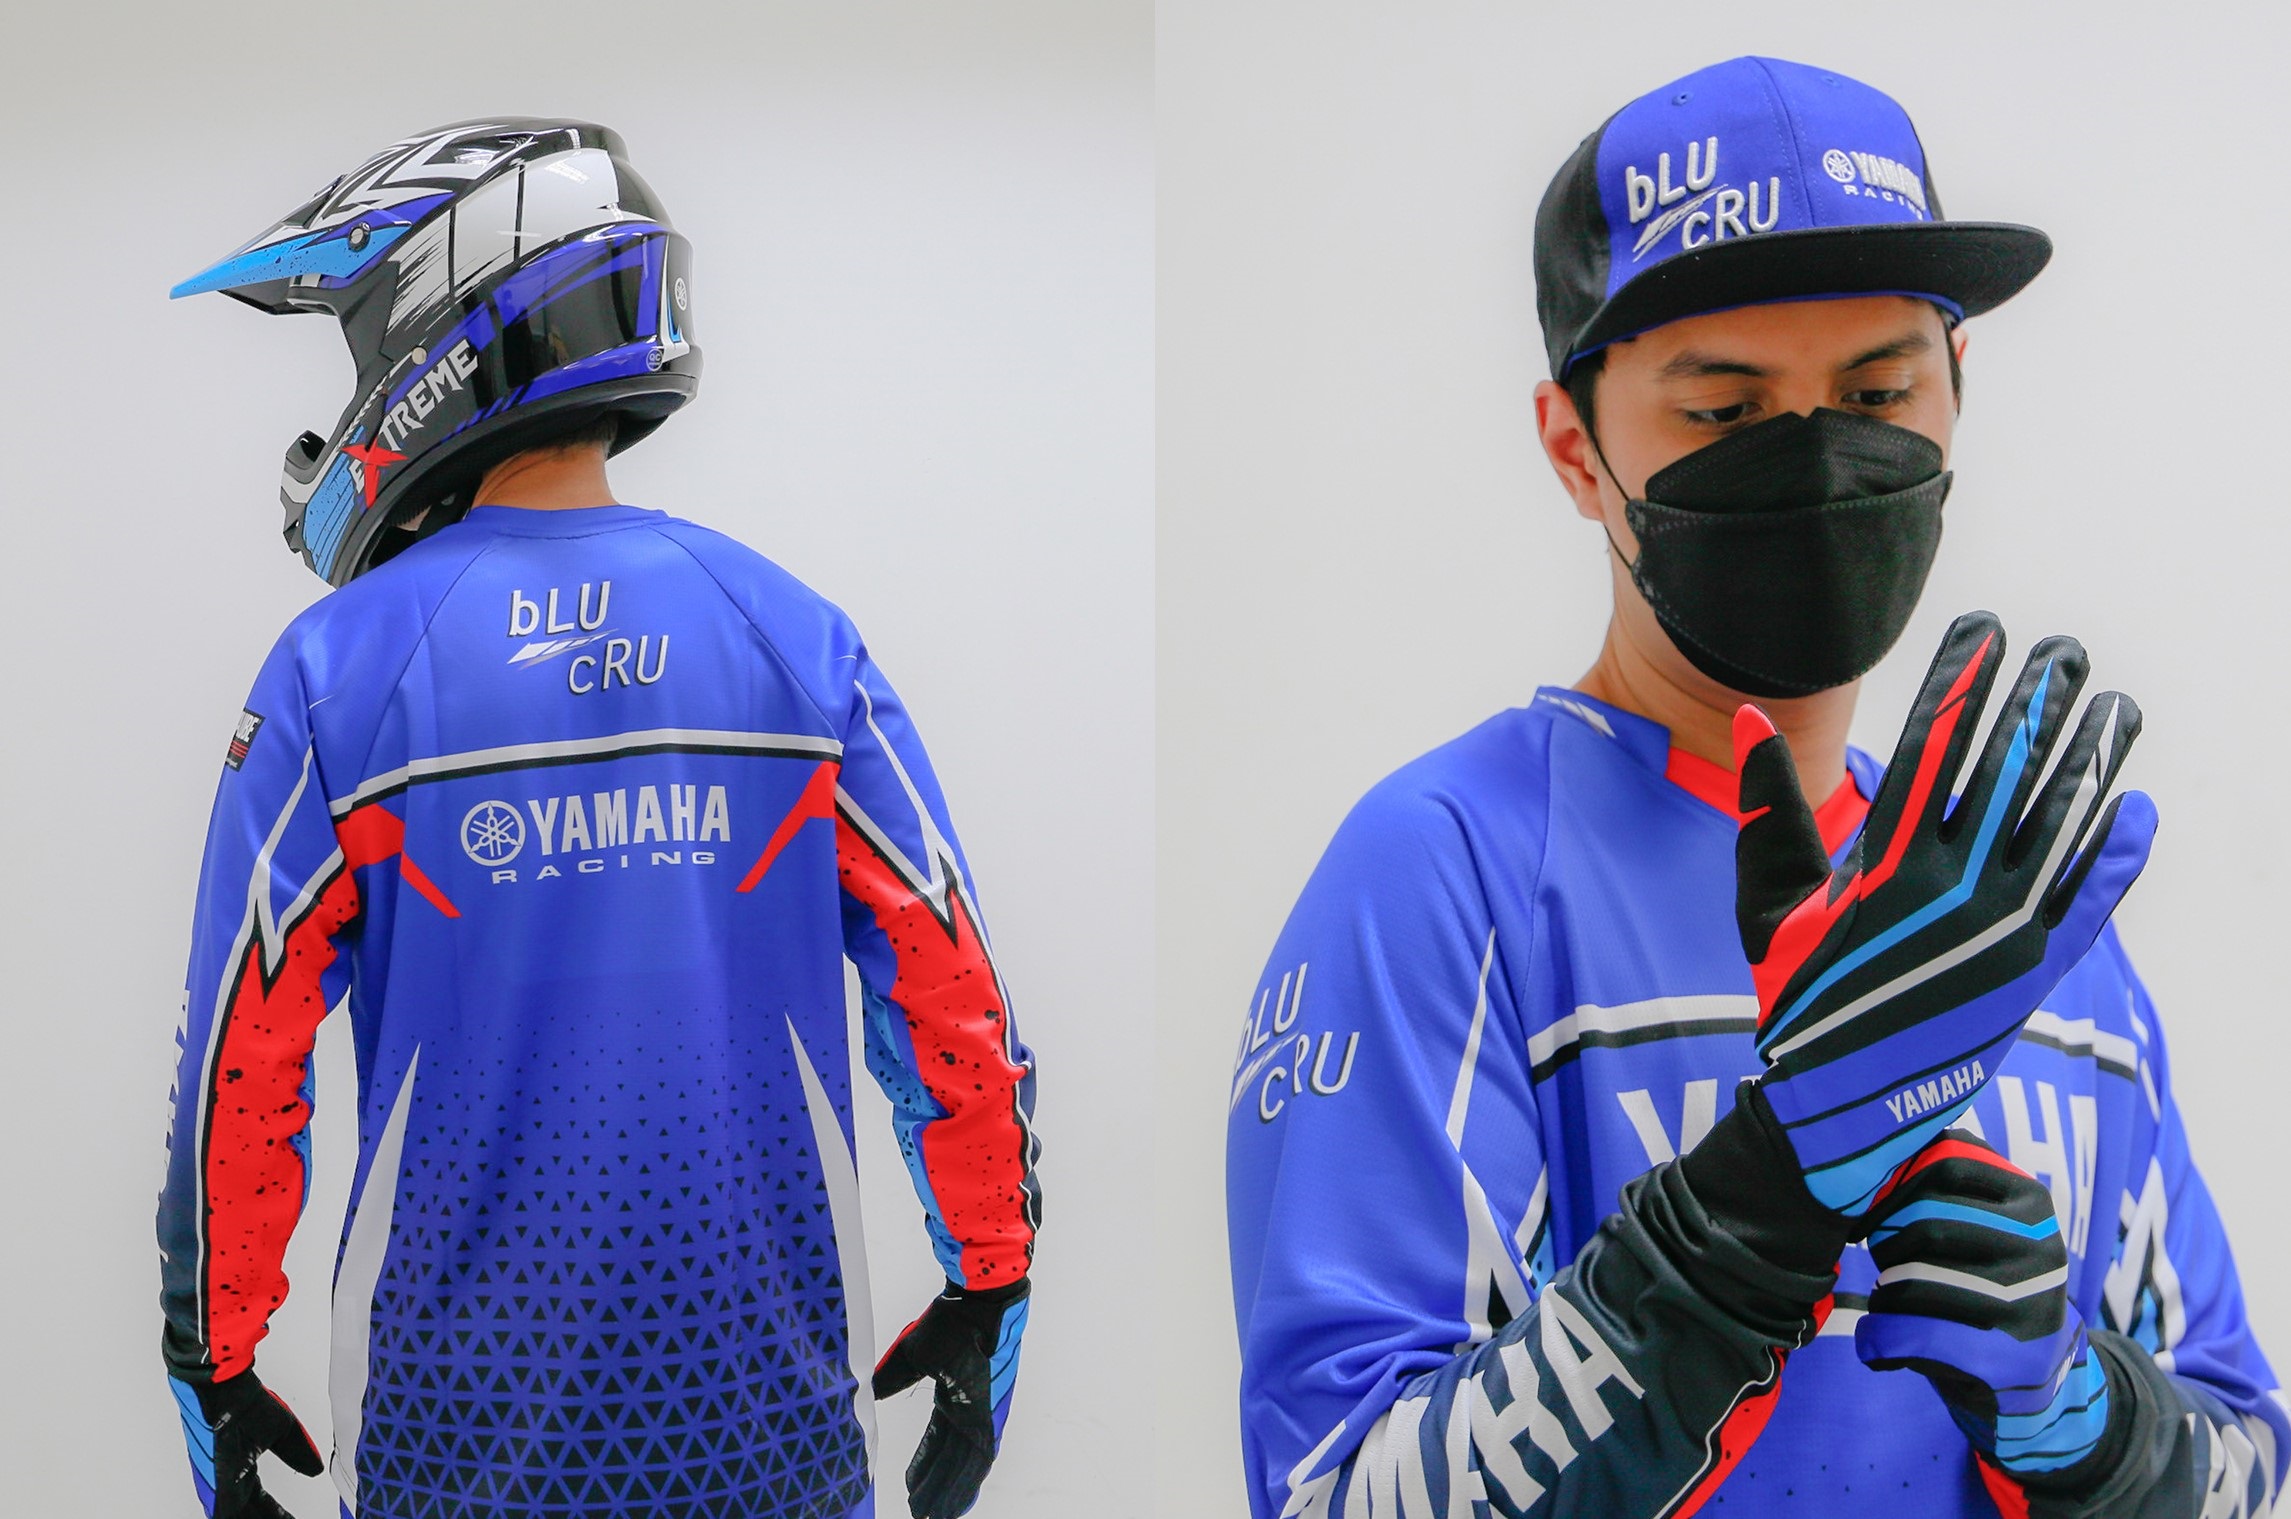 Obat Ganteng, Pakai Apparel bLU cRU Yamaha Rasanya Racing Banget